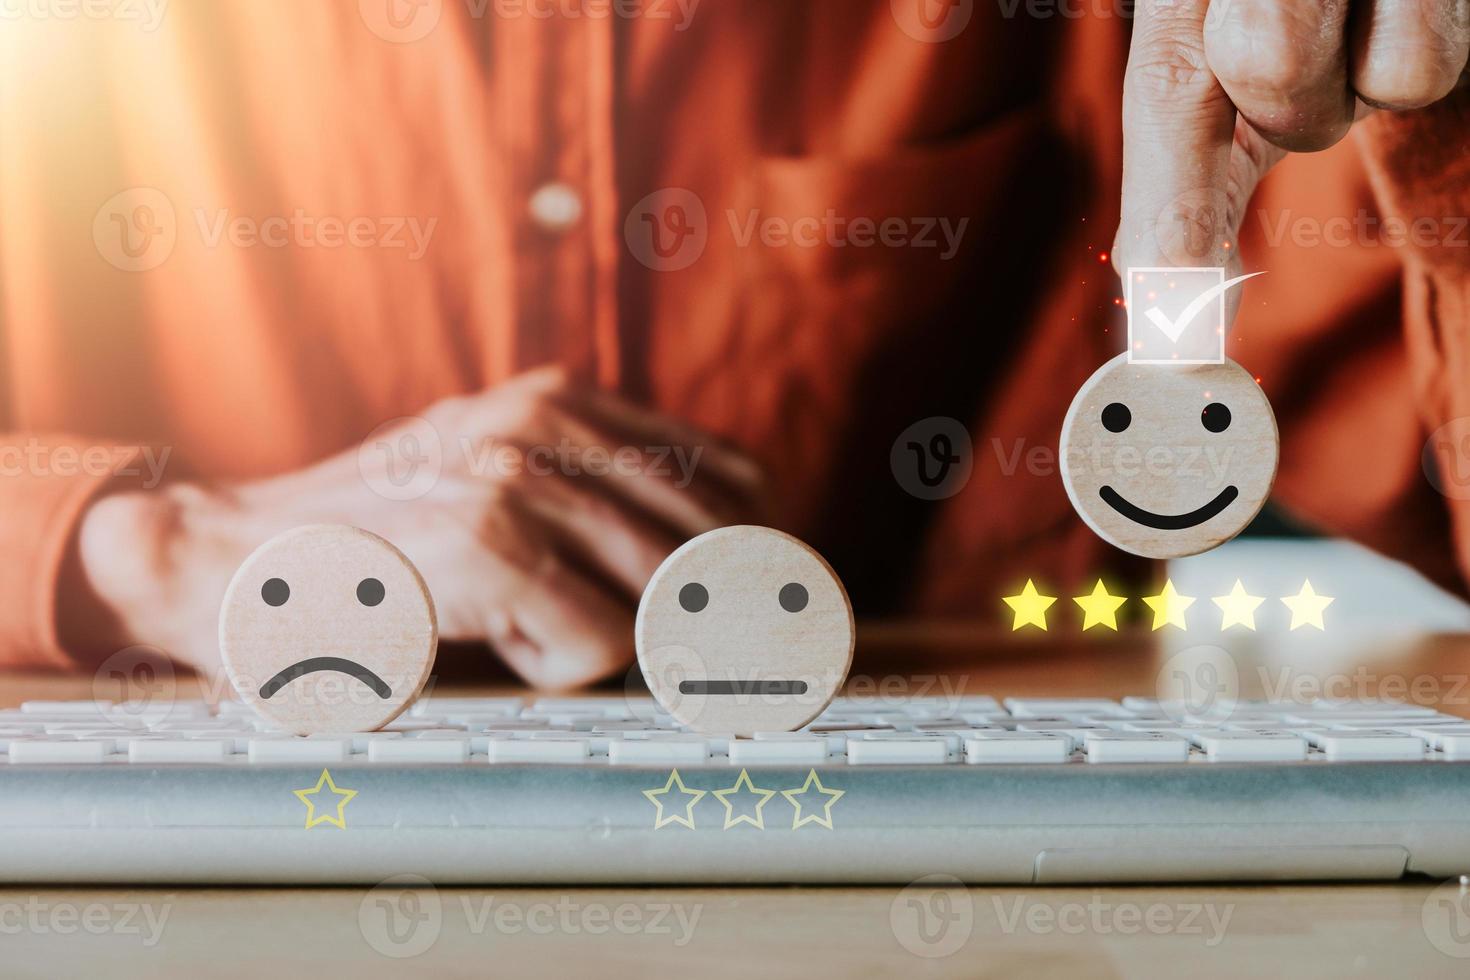 geschäftsmannhand, die smiley-emoticon auf virtuellem touchscreen hält. gute feedbackbewertung und positive kundenbewertung, erfahrung, zufriedenheitsumfrage, welttag der psychischen gesundheit foto